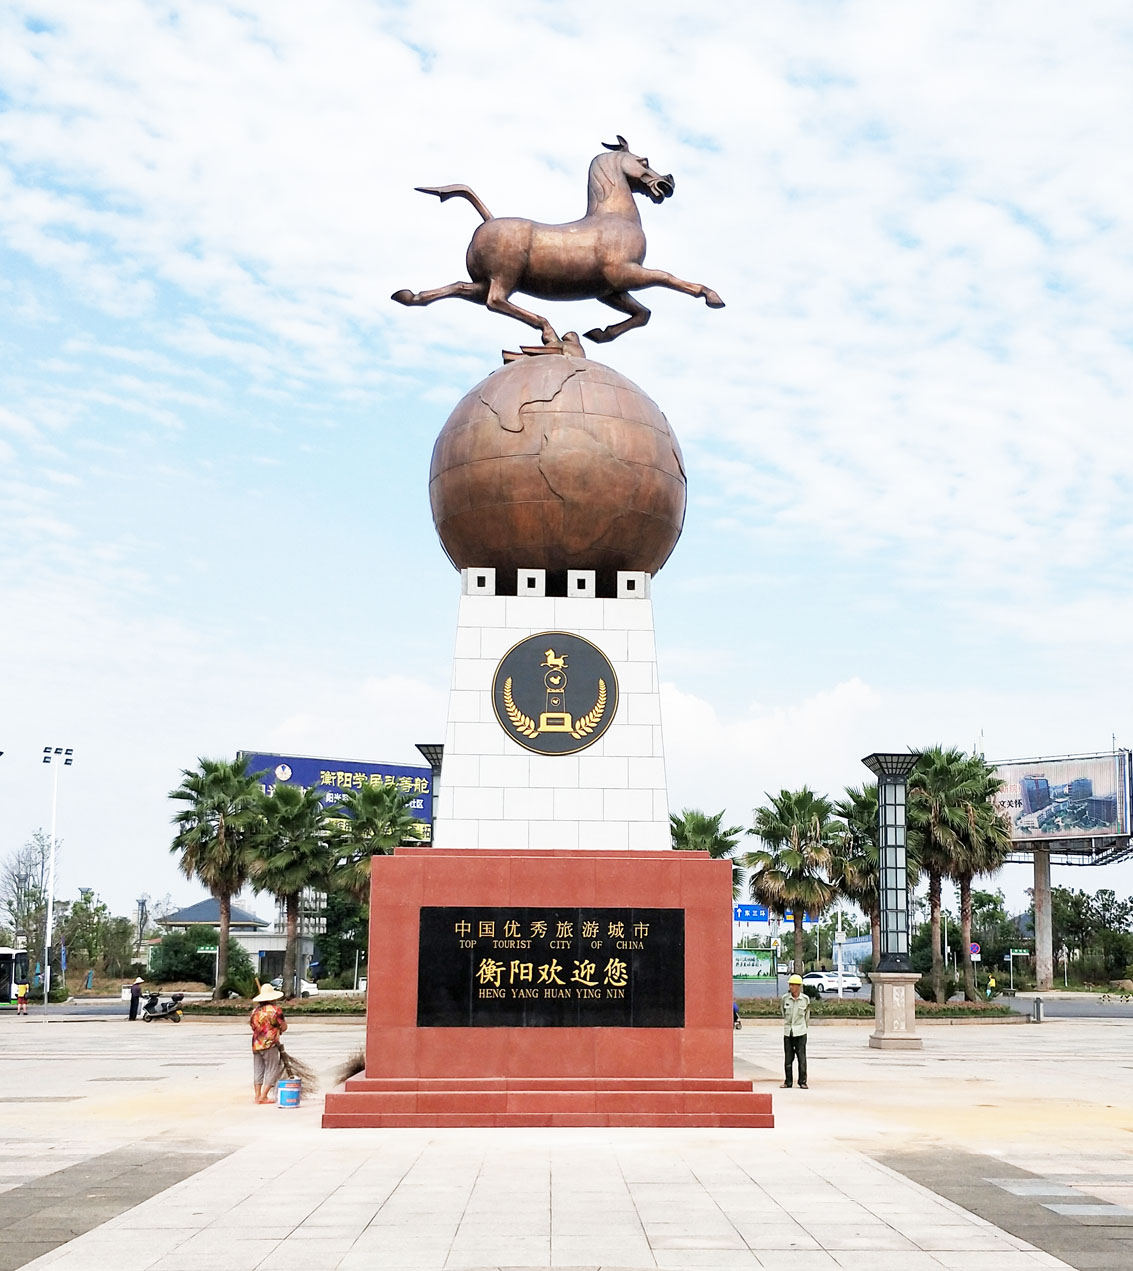 中国优秀旅游城市标志马踏飞燕雕塑